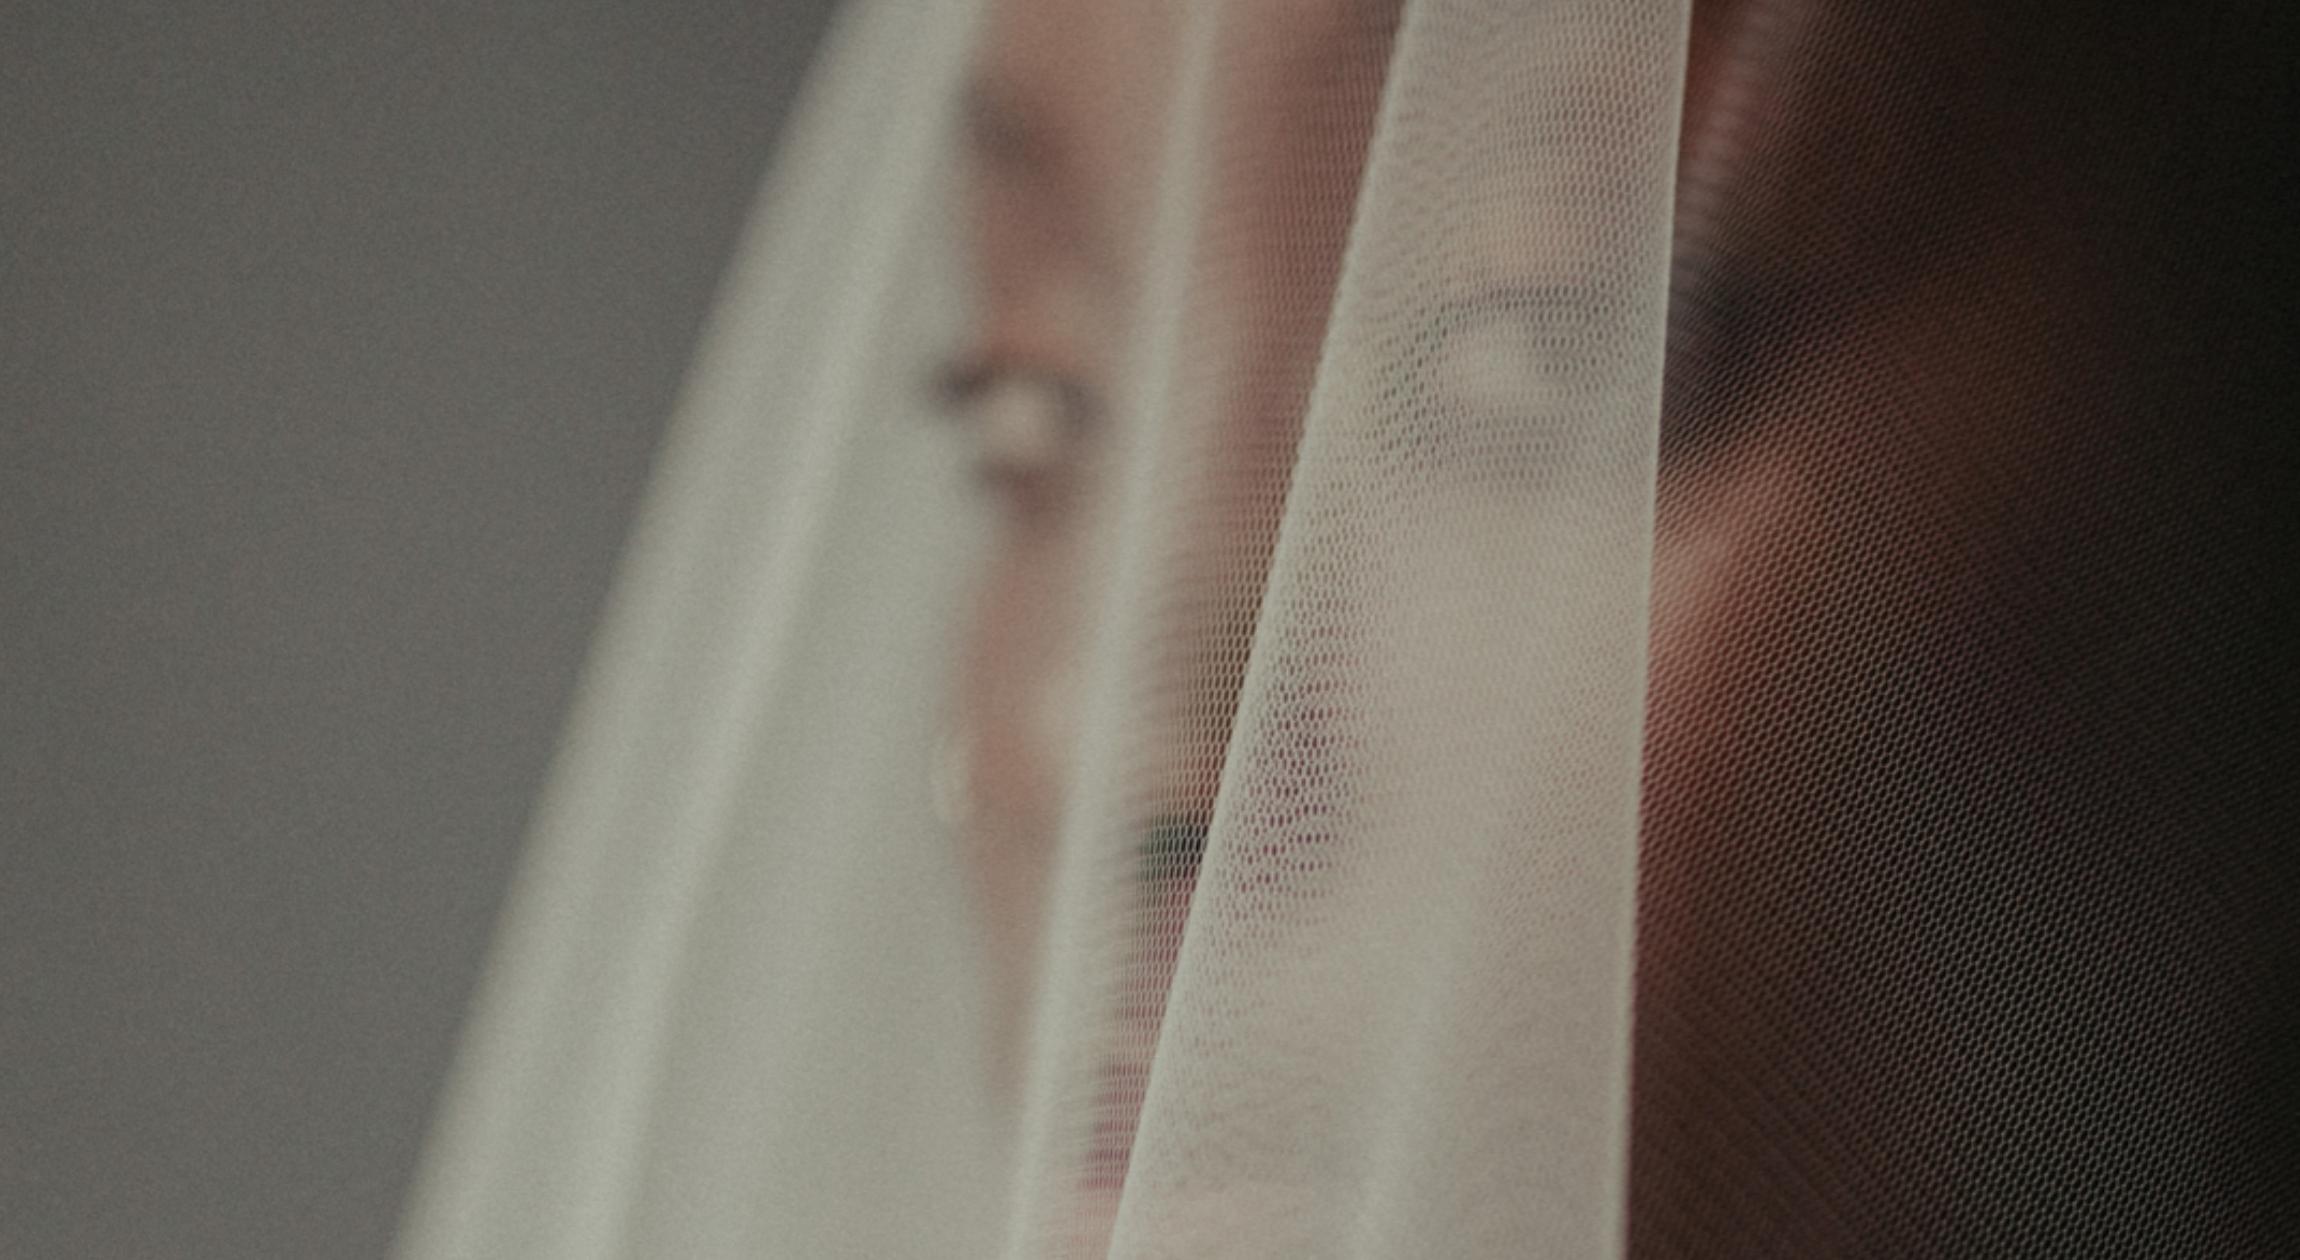 A Black bride looks through a veil